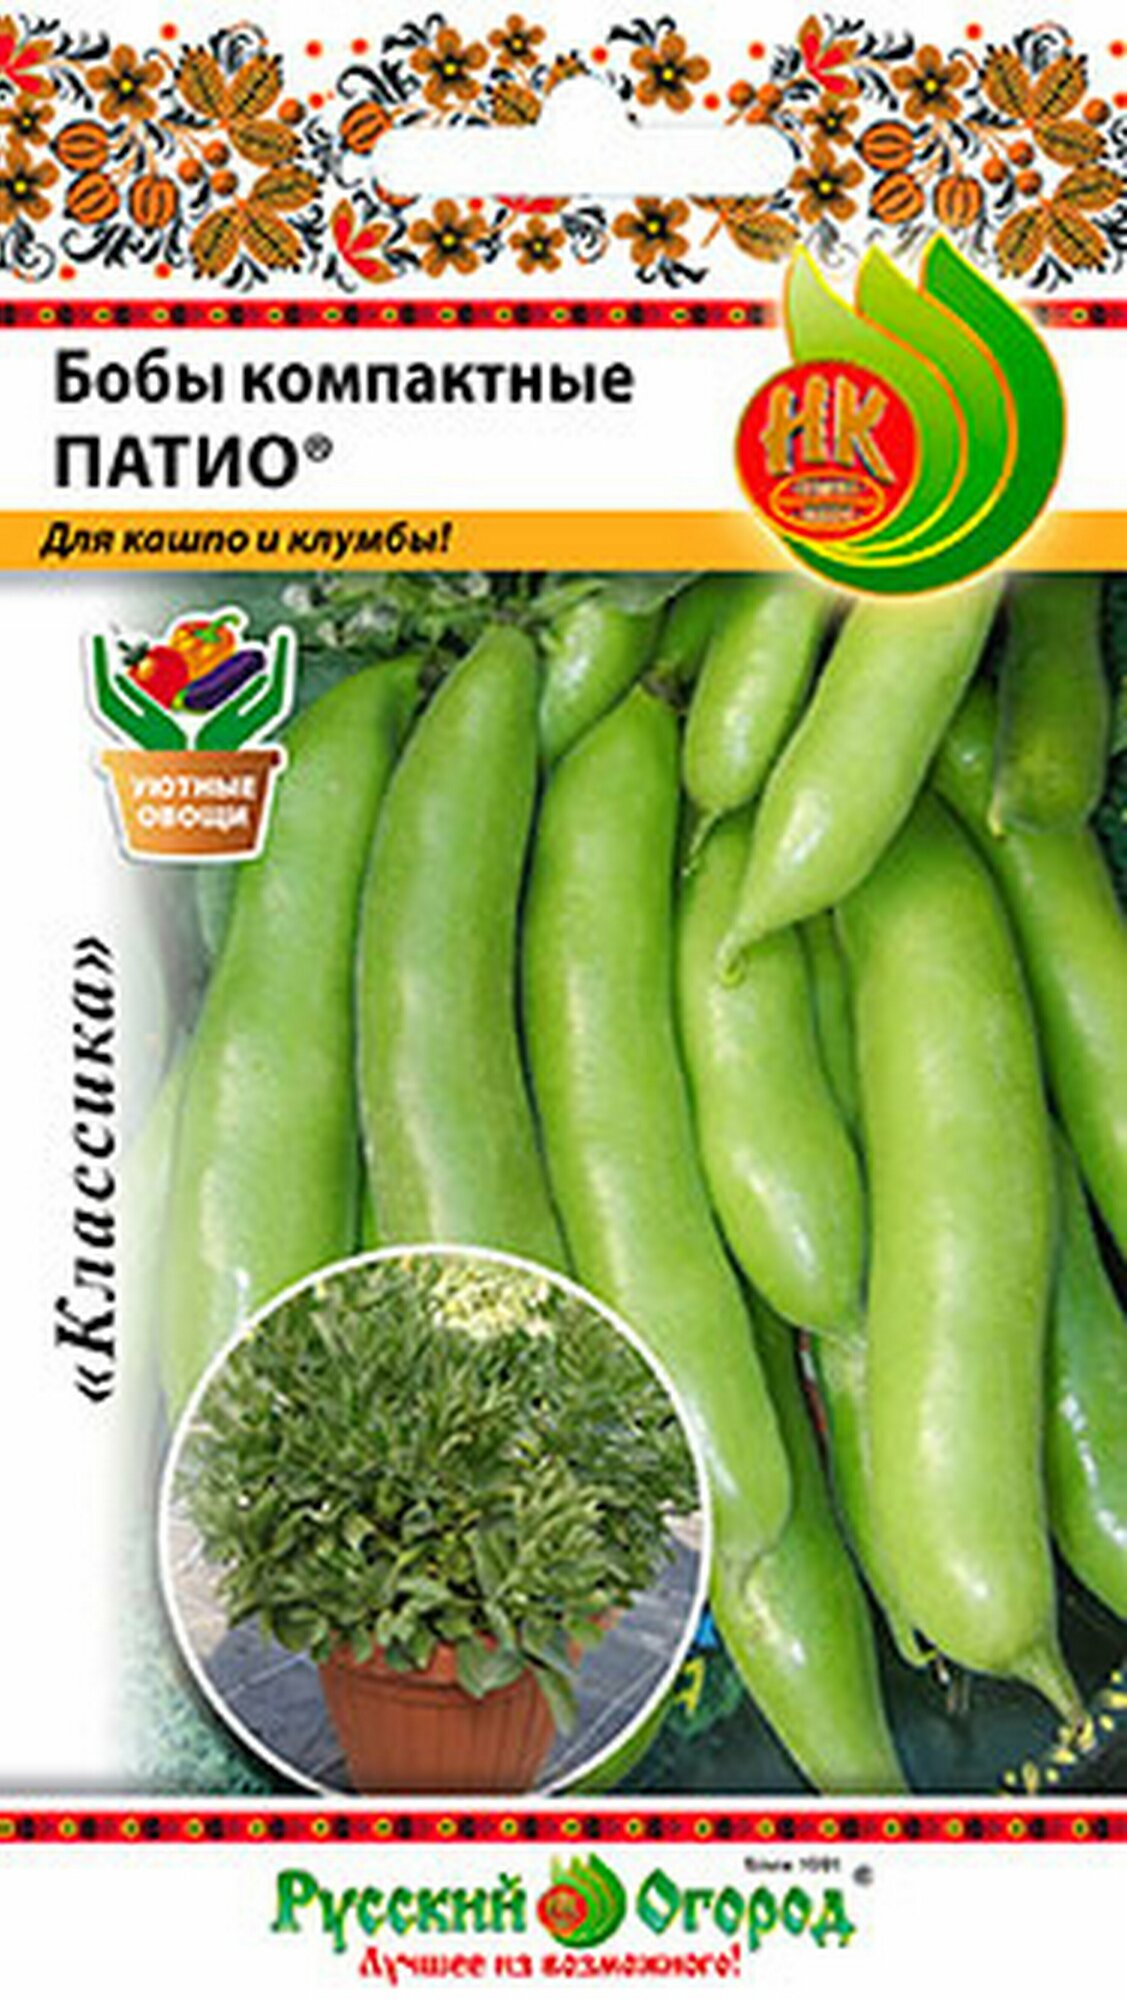 Семена Бобы компактные Патио 6 грамм семян Русский Огород